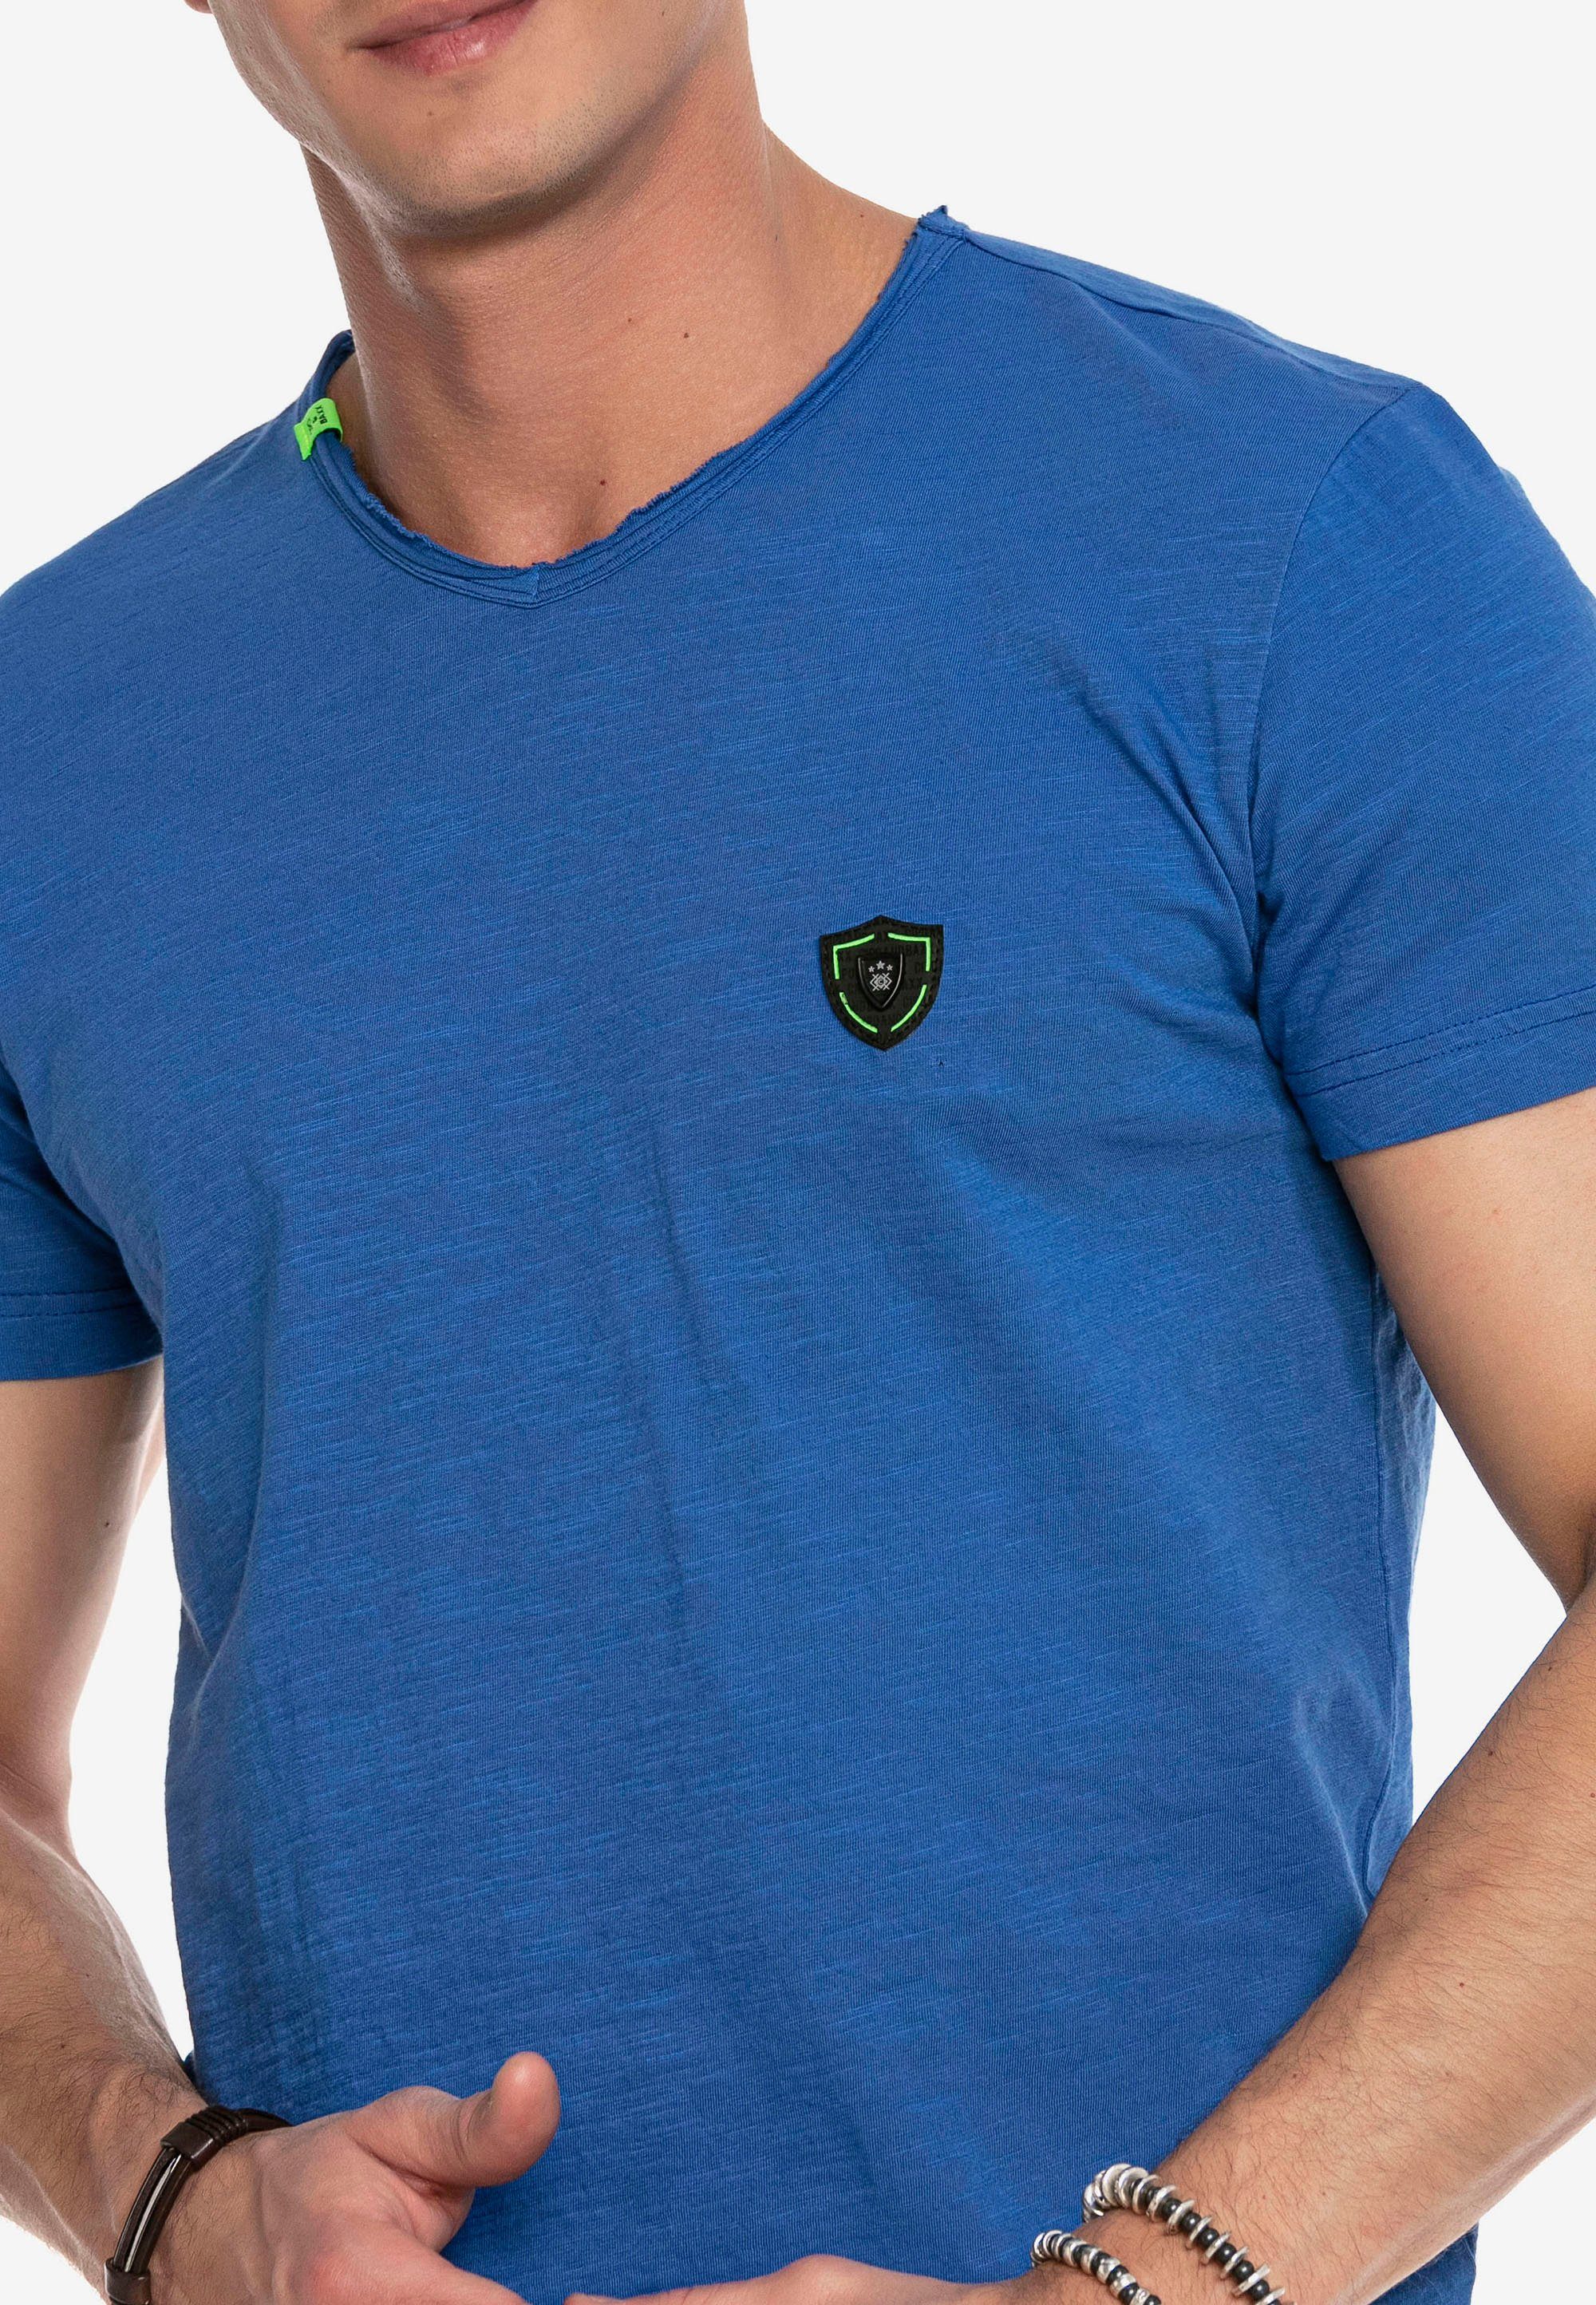 sportlichen blau im T-Shirt & Look Cipo Baxx CT648